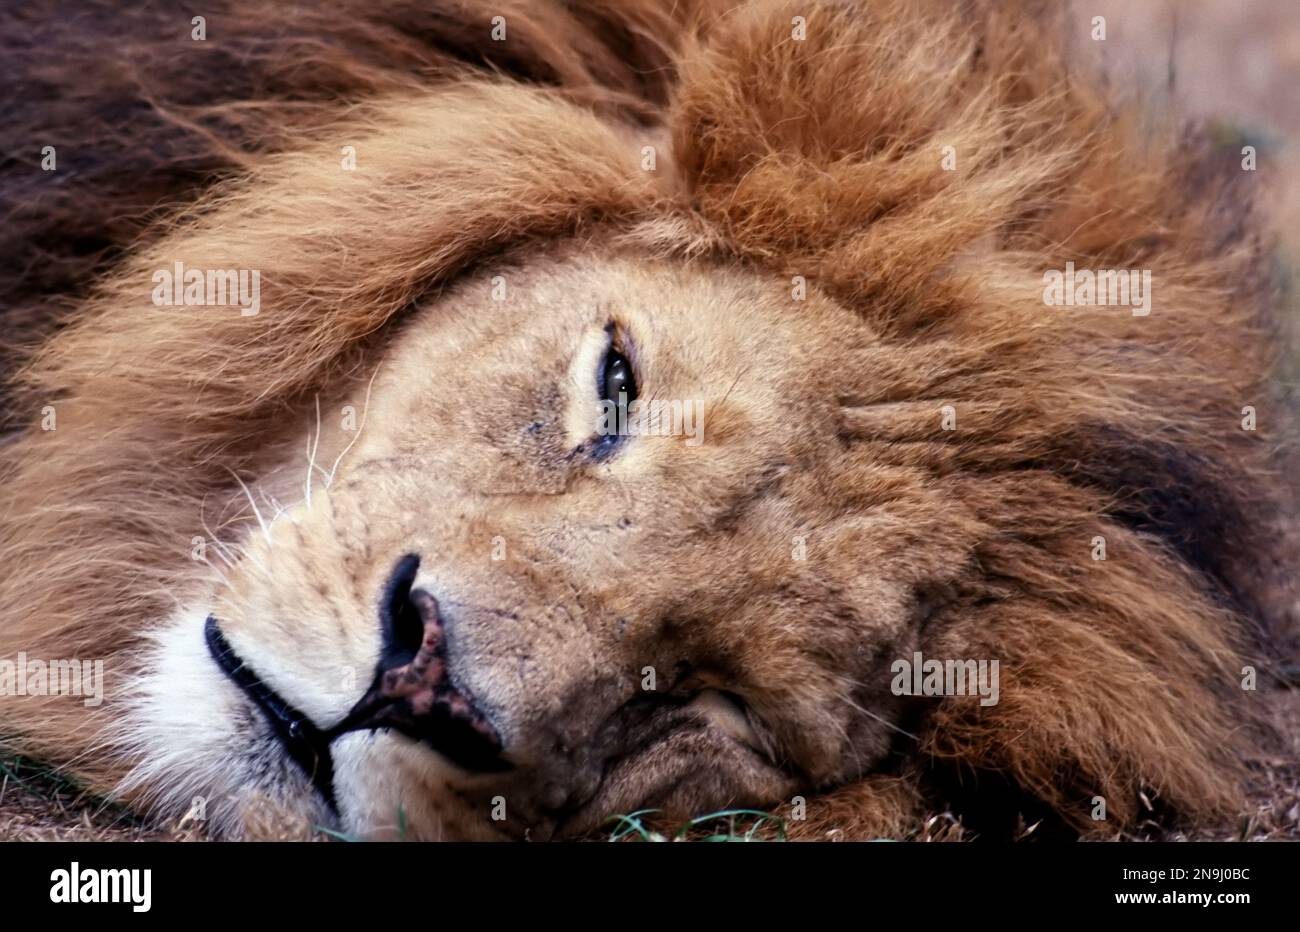 Männlicher Löwe (panthera leo) - Kopfschuss sieht direkt in die Kamera, älterer Löwe. Stockfoto